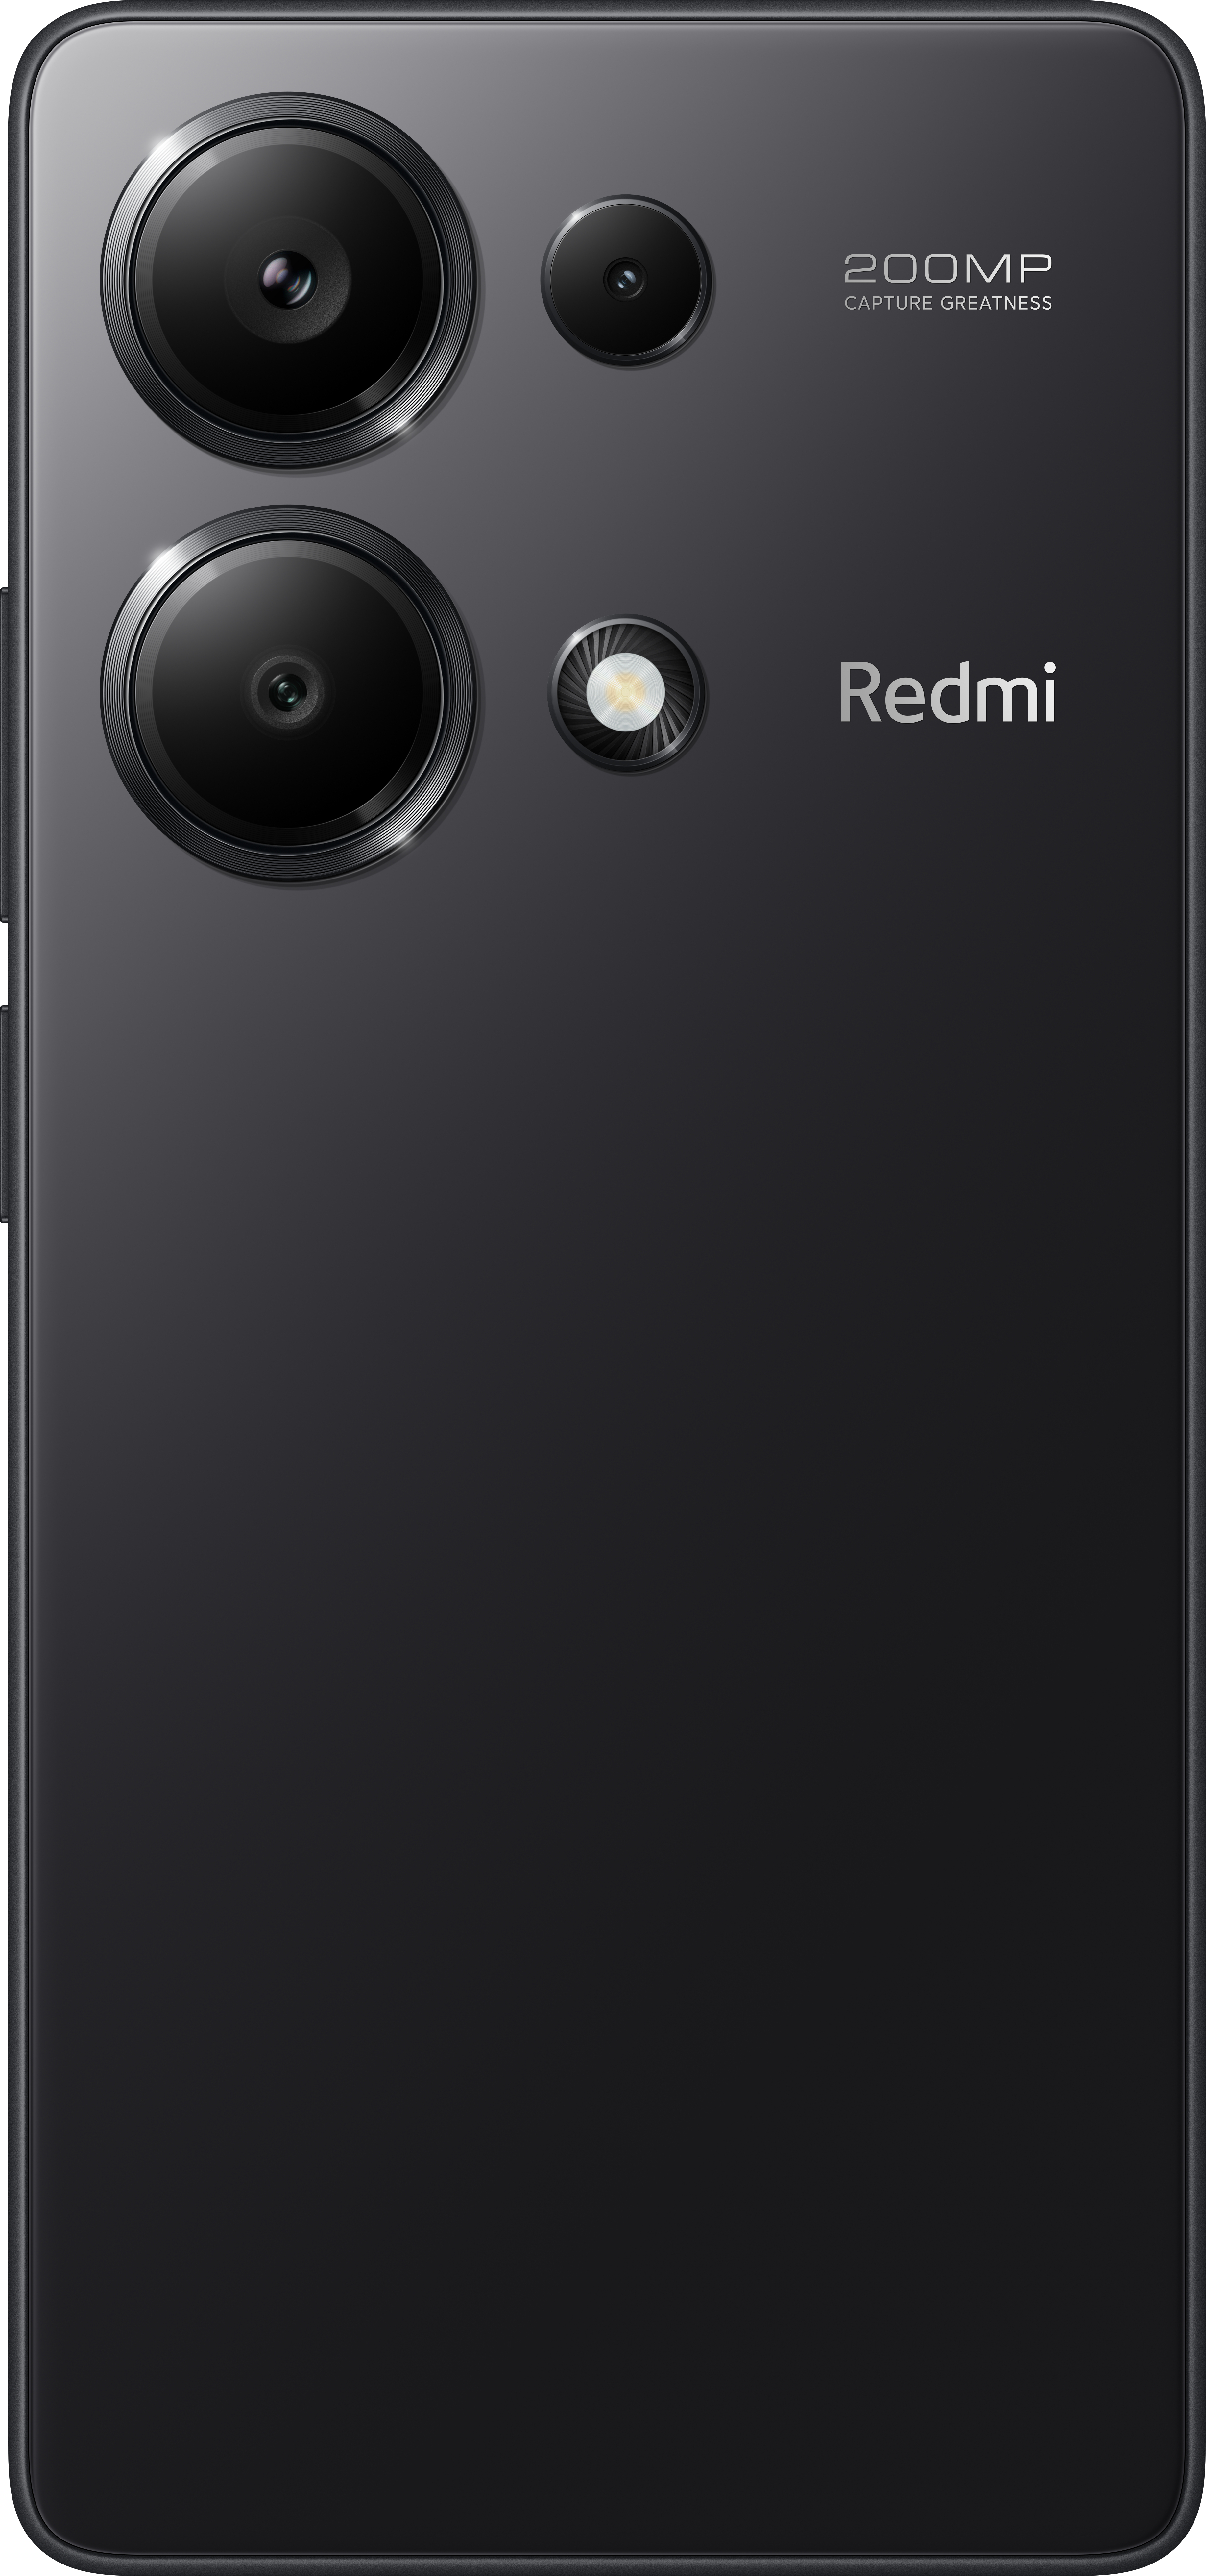 13 GB Note Pro Dual Redmi SIM Black 256 Midnight XIAOMI